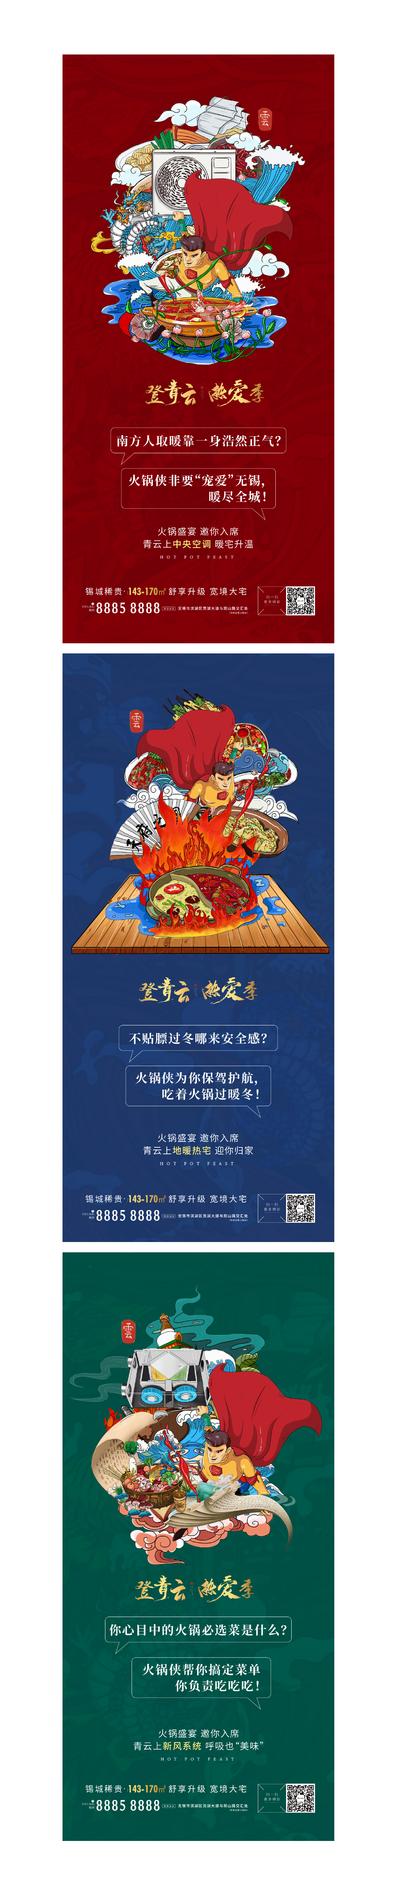 南门网 火锅节暖场活动前宣系列海报